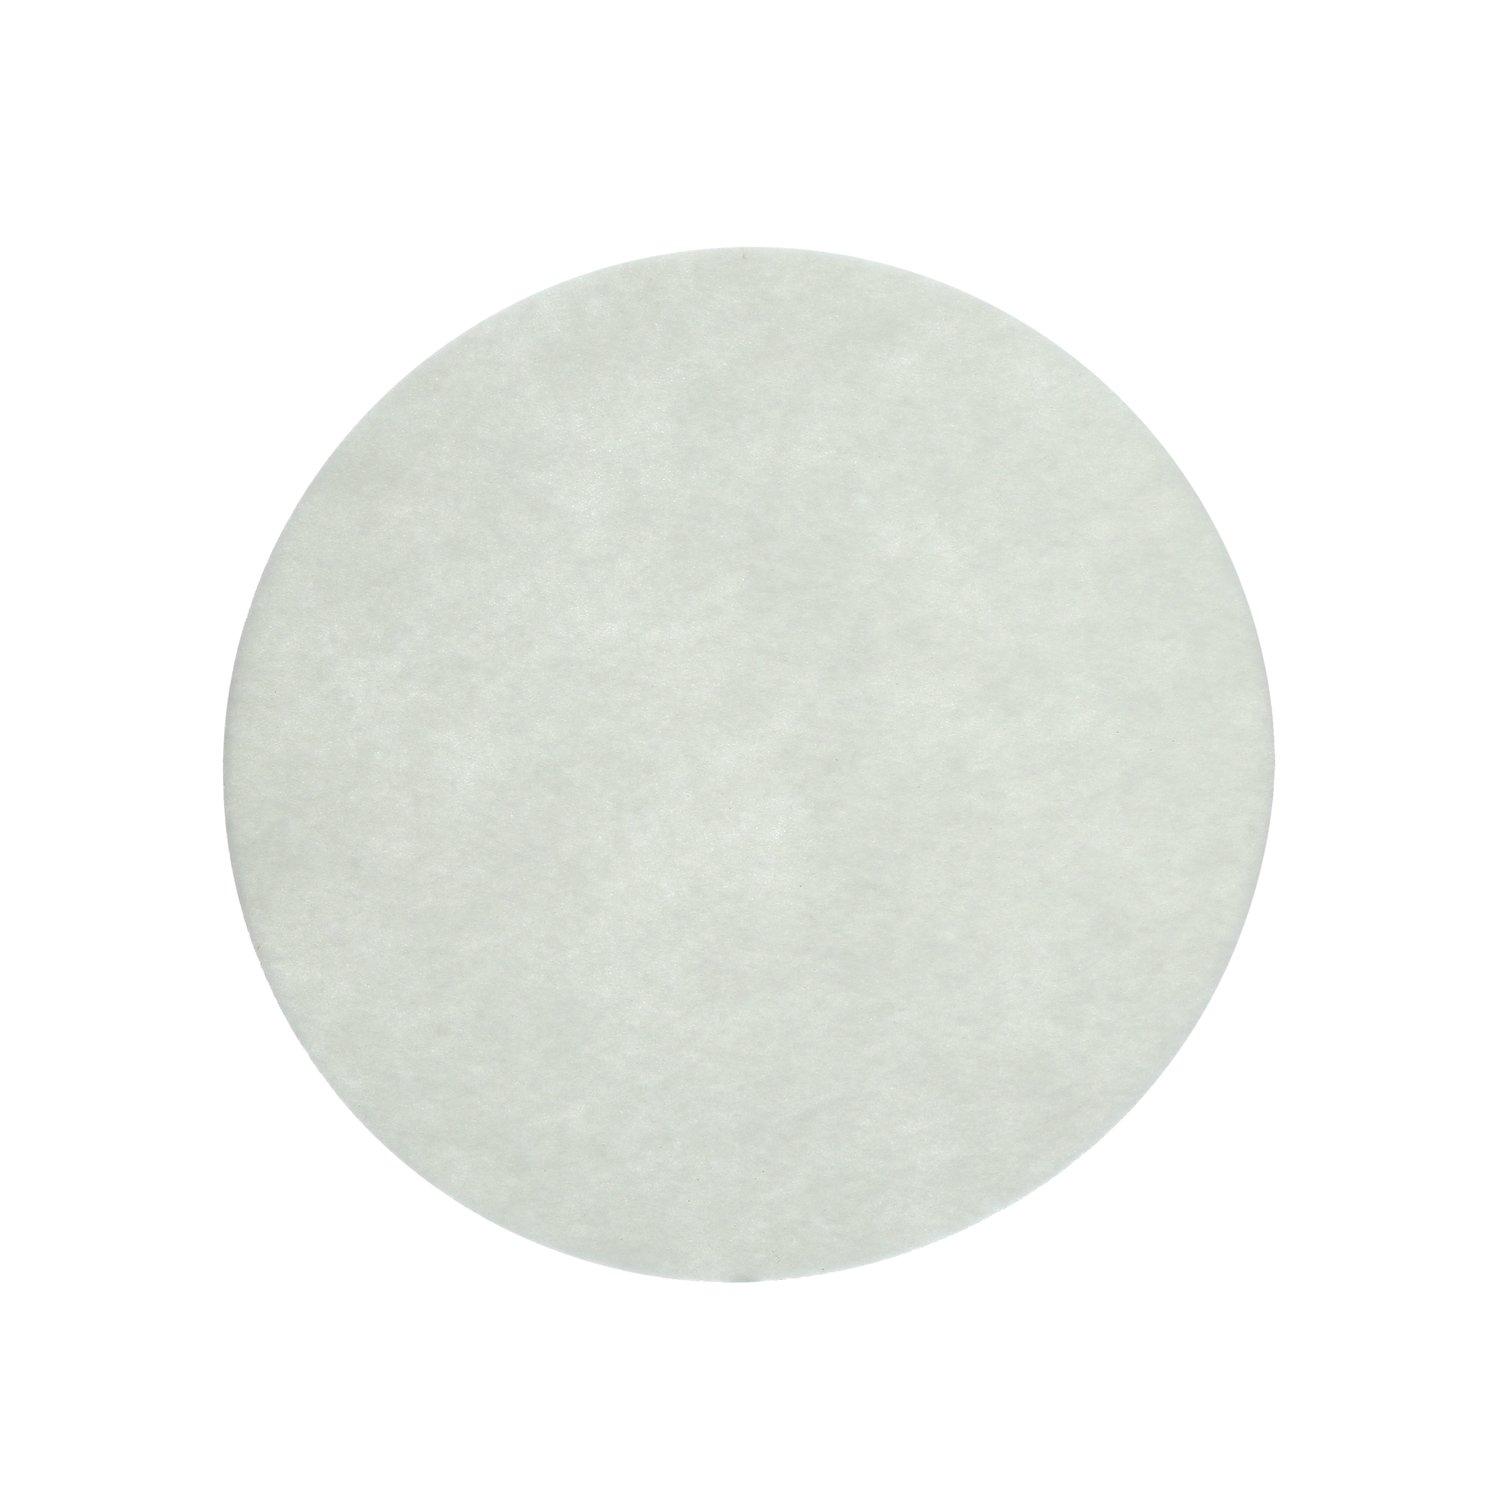 7000002196 - 3M Carpet Bonnet Pad, White, 15 in, 5/Case